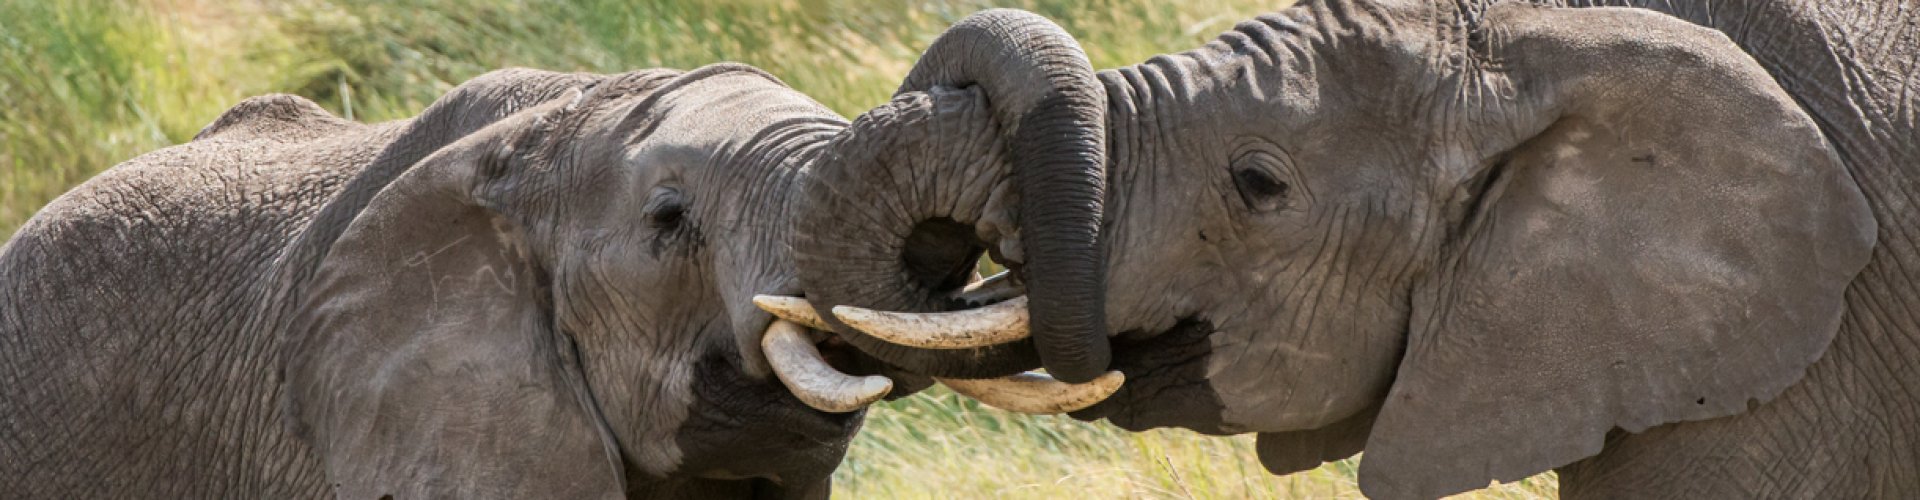 Honeymoon Tanzania Elephant